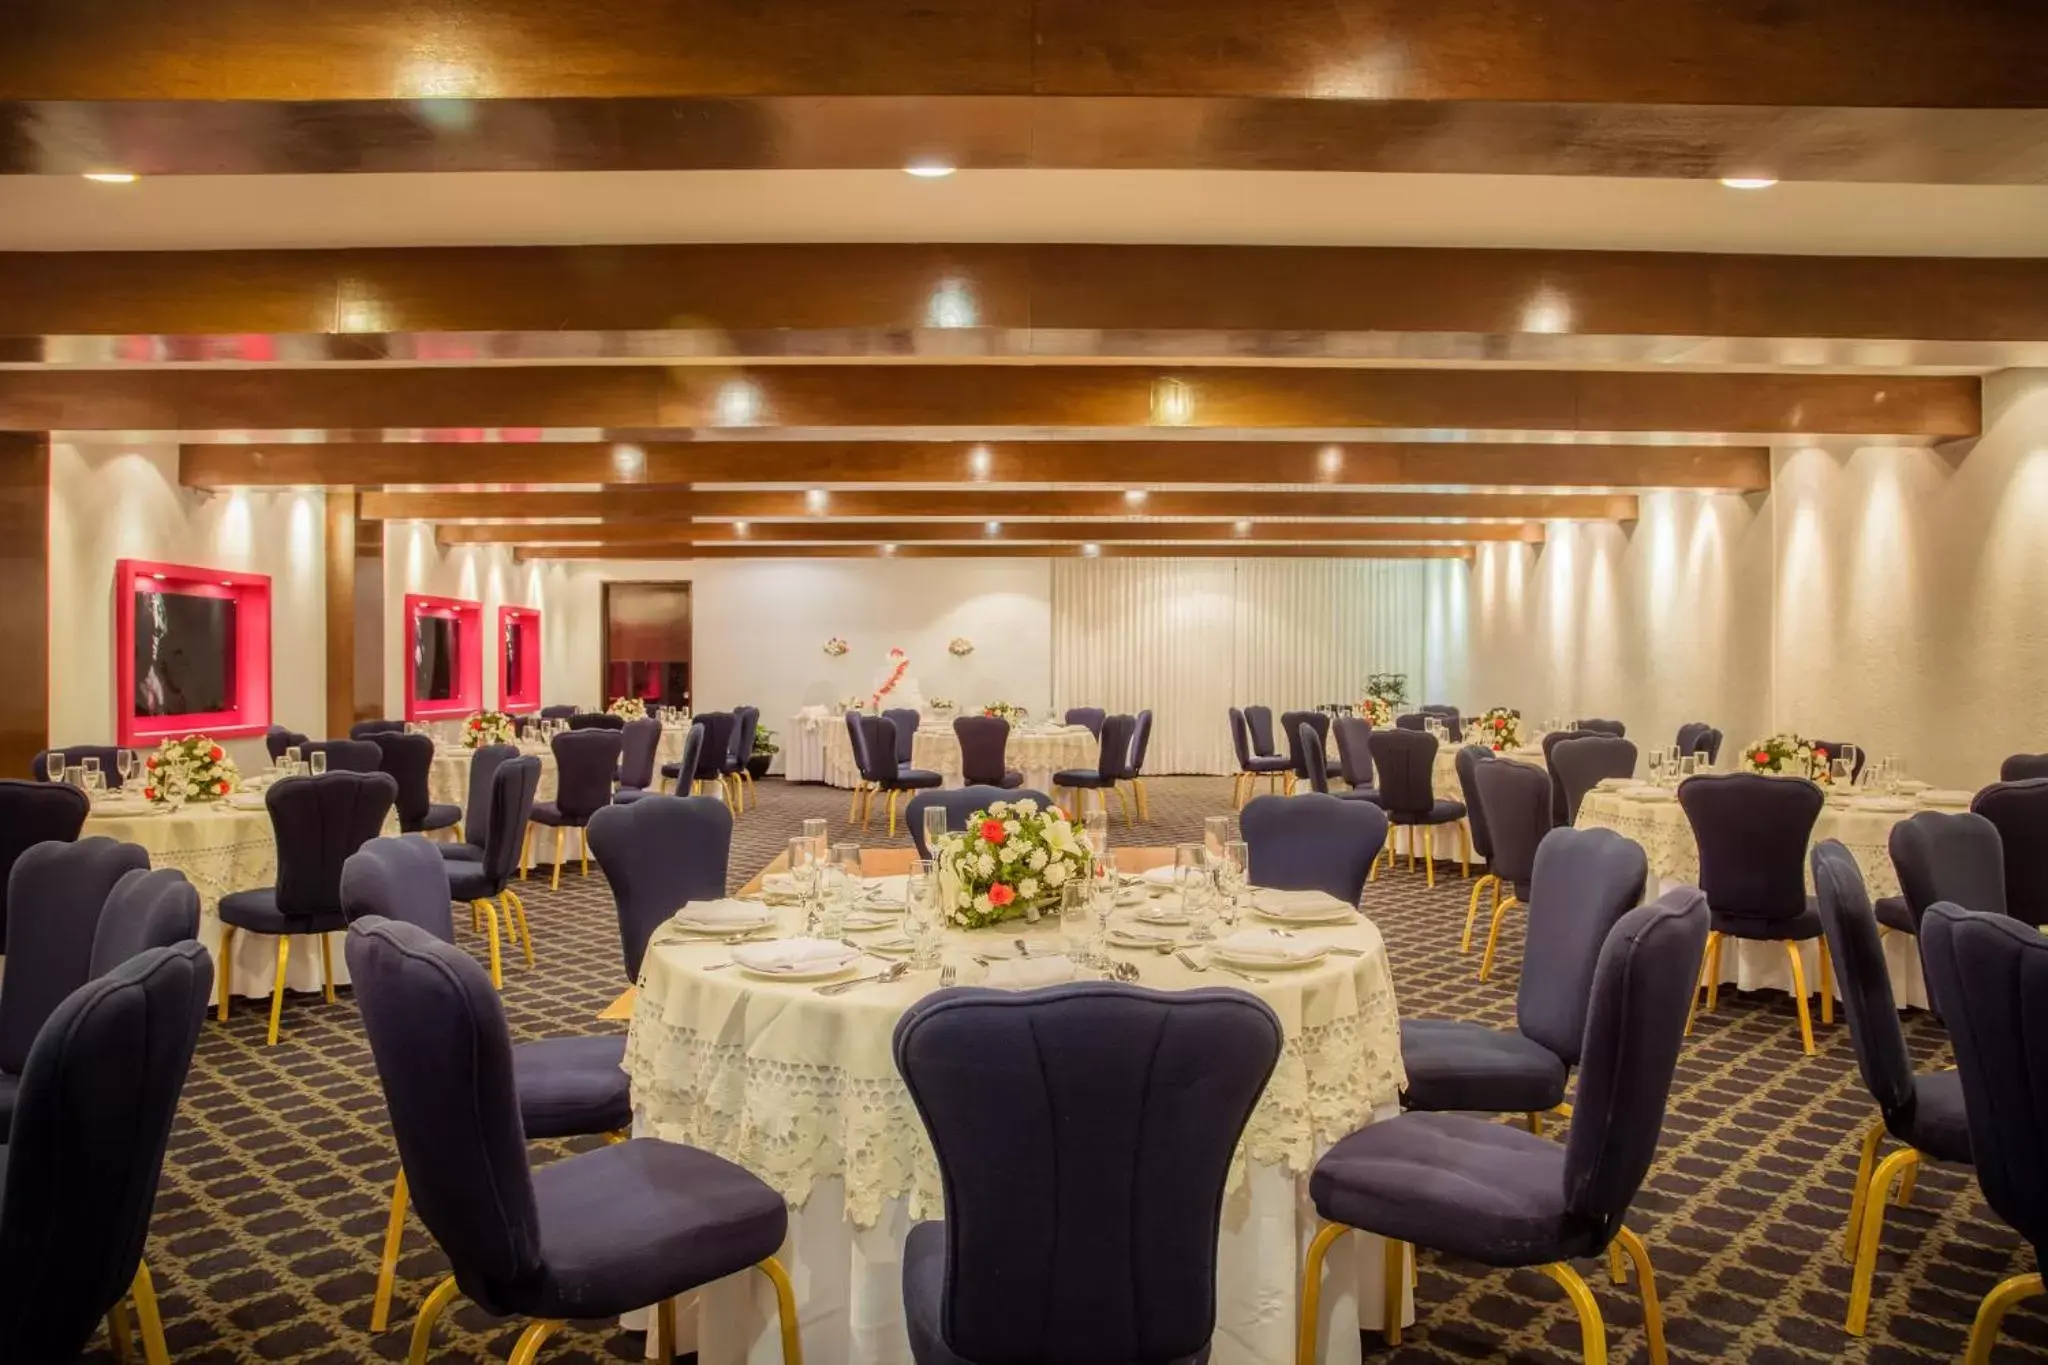 Meeting/conference room, Banquet Facilities in Gamma Merida El Castellano